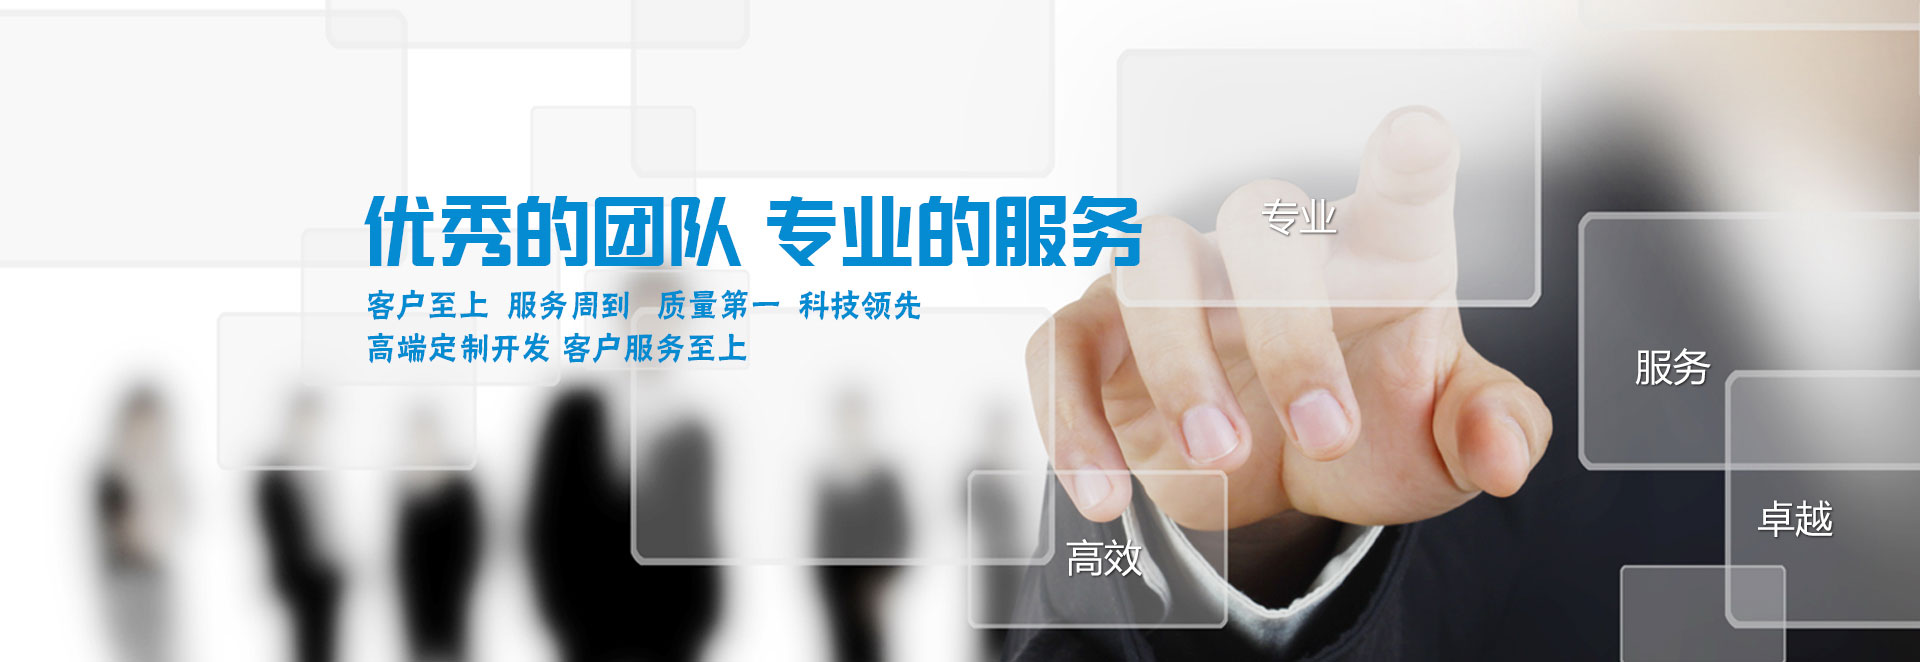 金年会体育·(中国)官方网站-IOS版/安卓版/手机版APP下载
